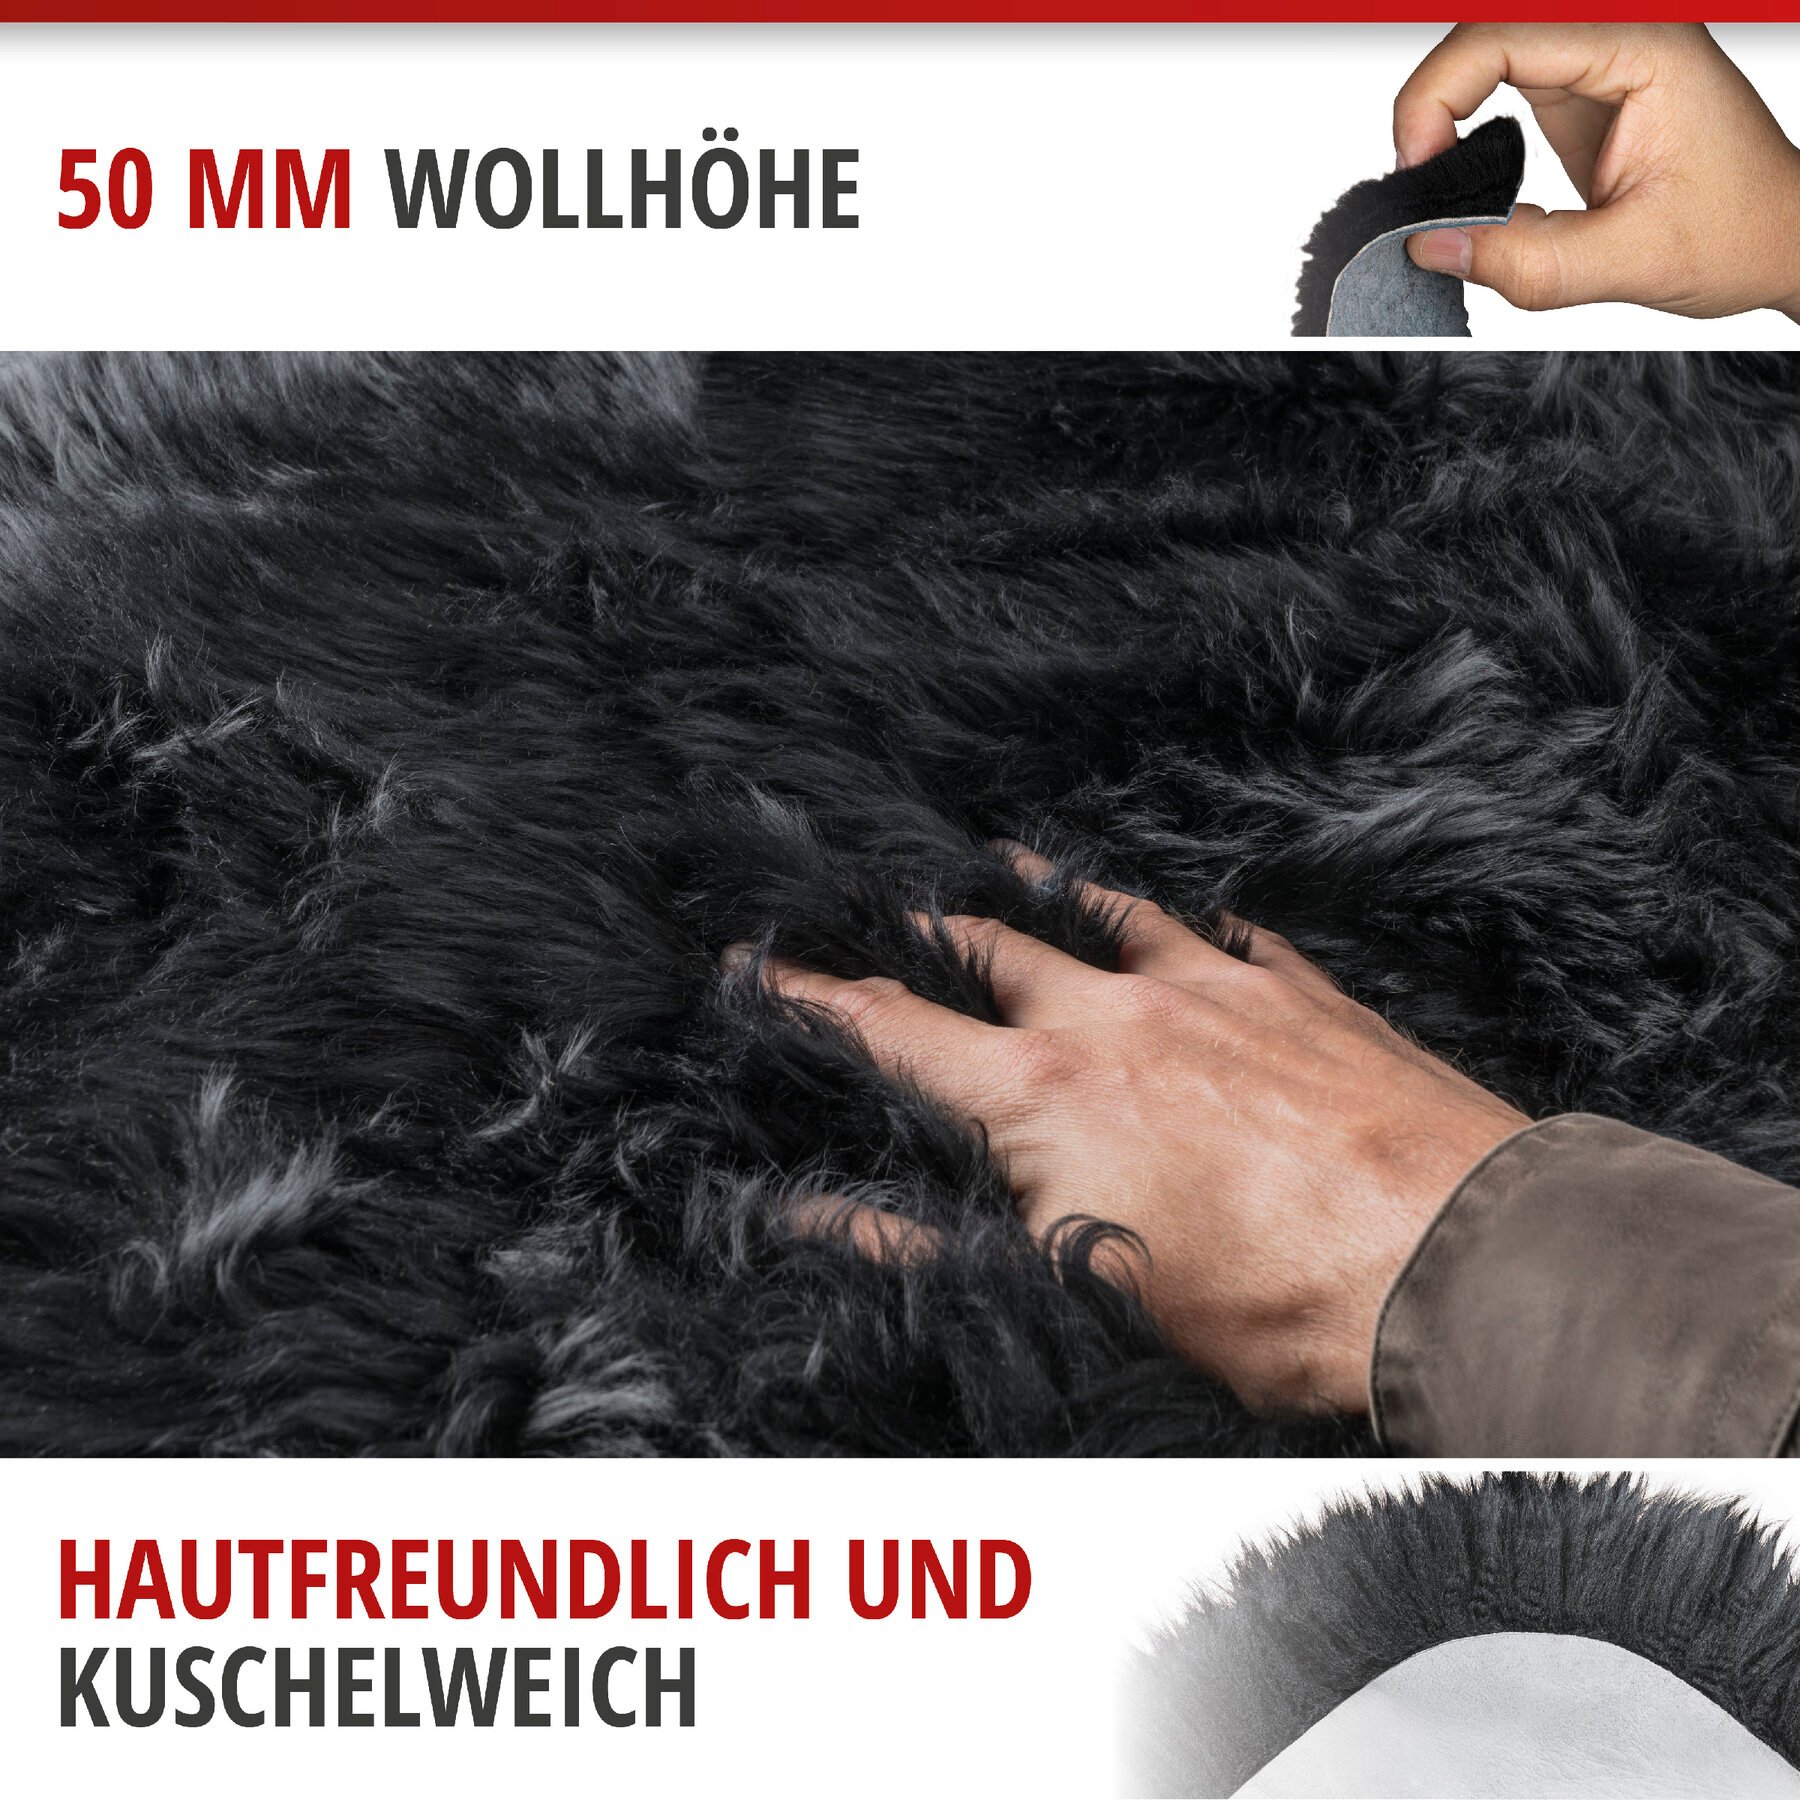 Lammfell Teppich Blake schwarz 80-90cm aus 100% natürlichem Lammfell, Wollhöhe 50mm, ideal im Wohn- & Schlafzimmer